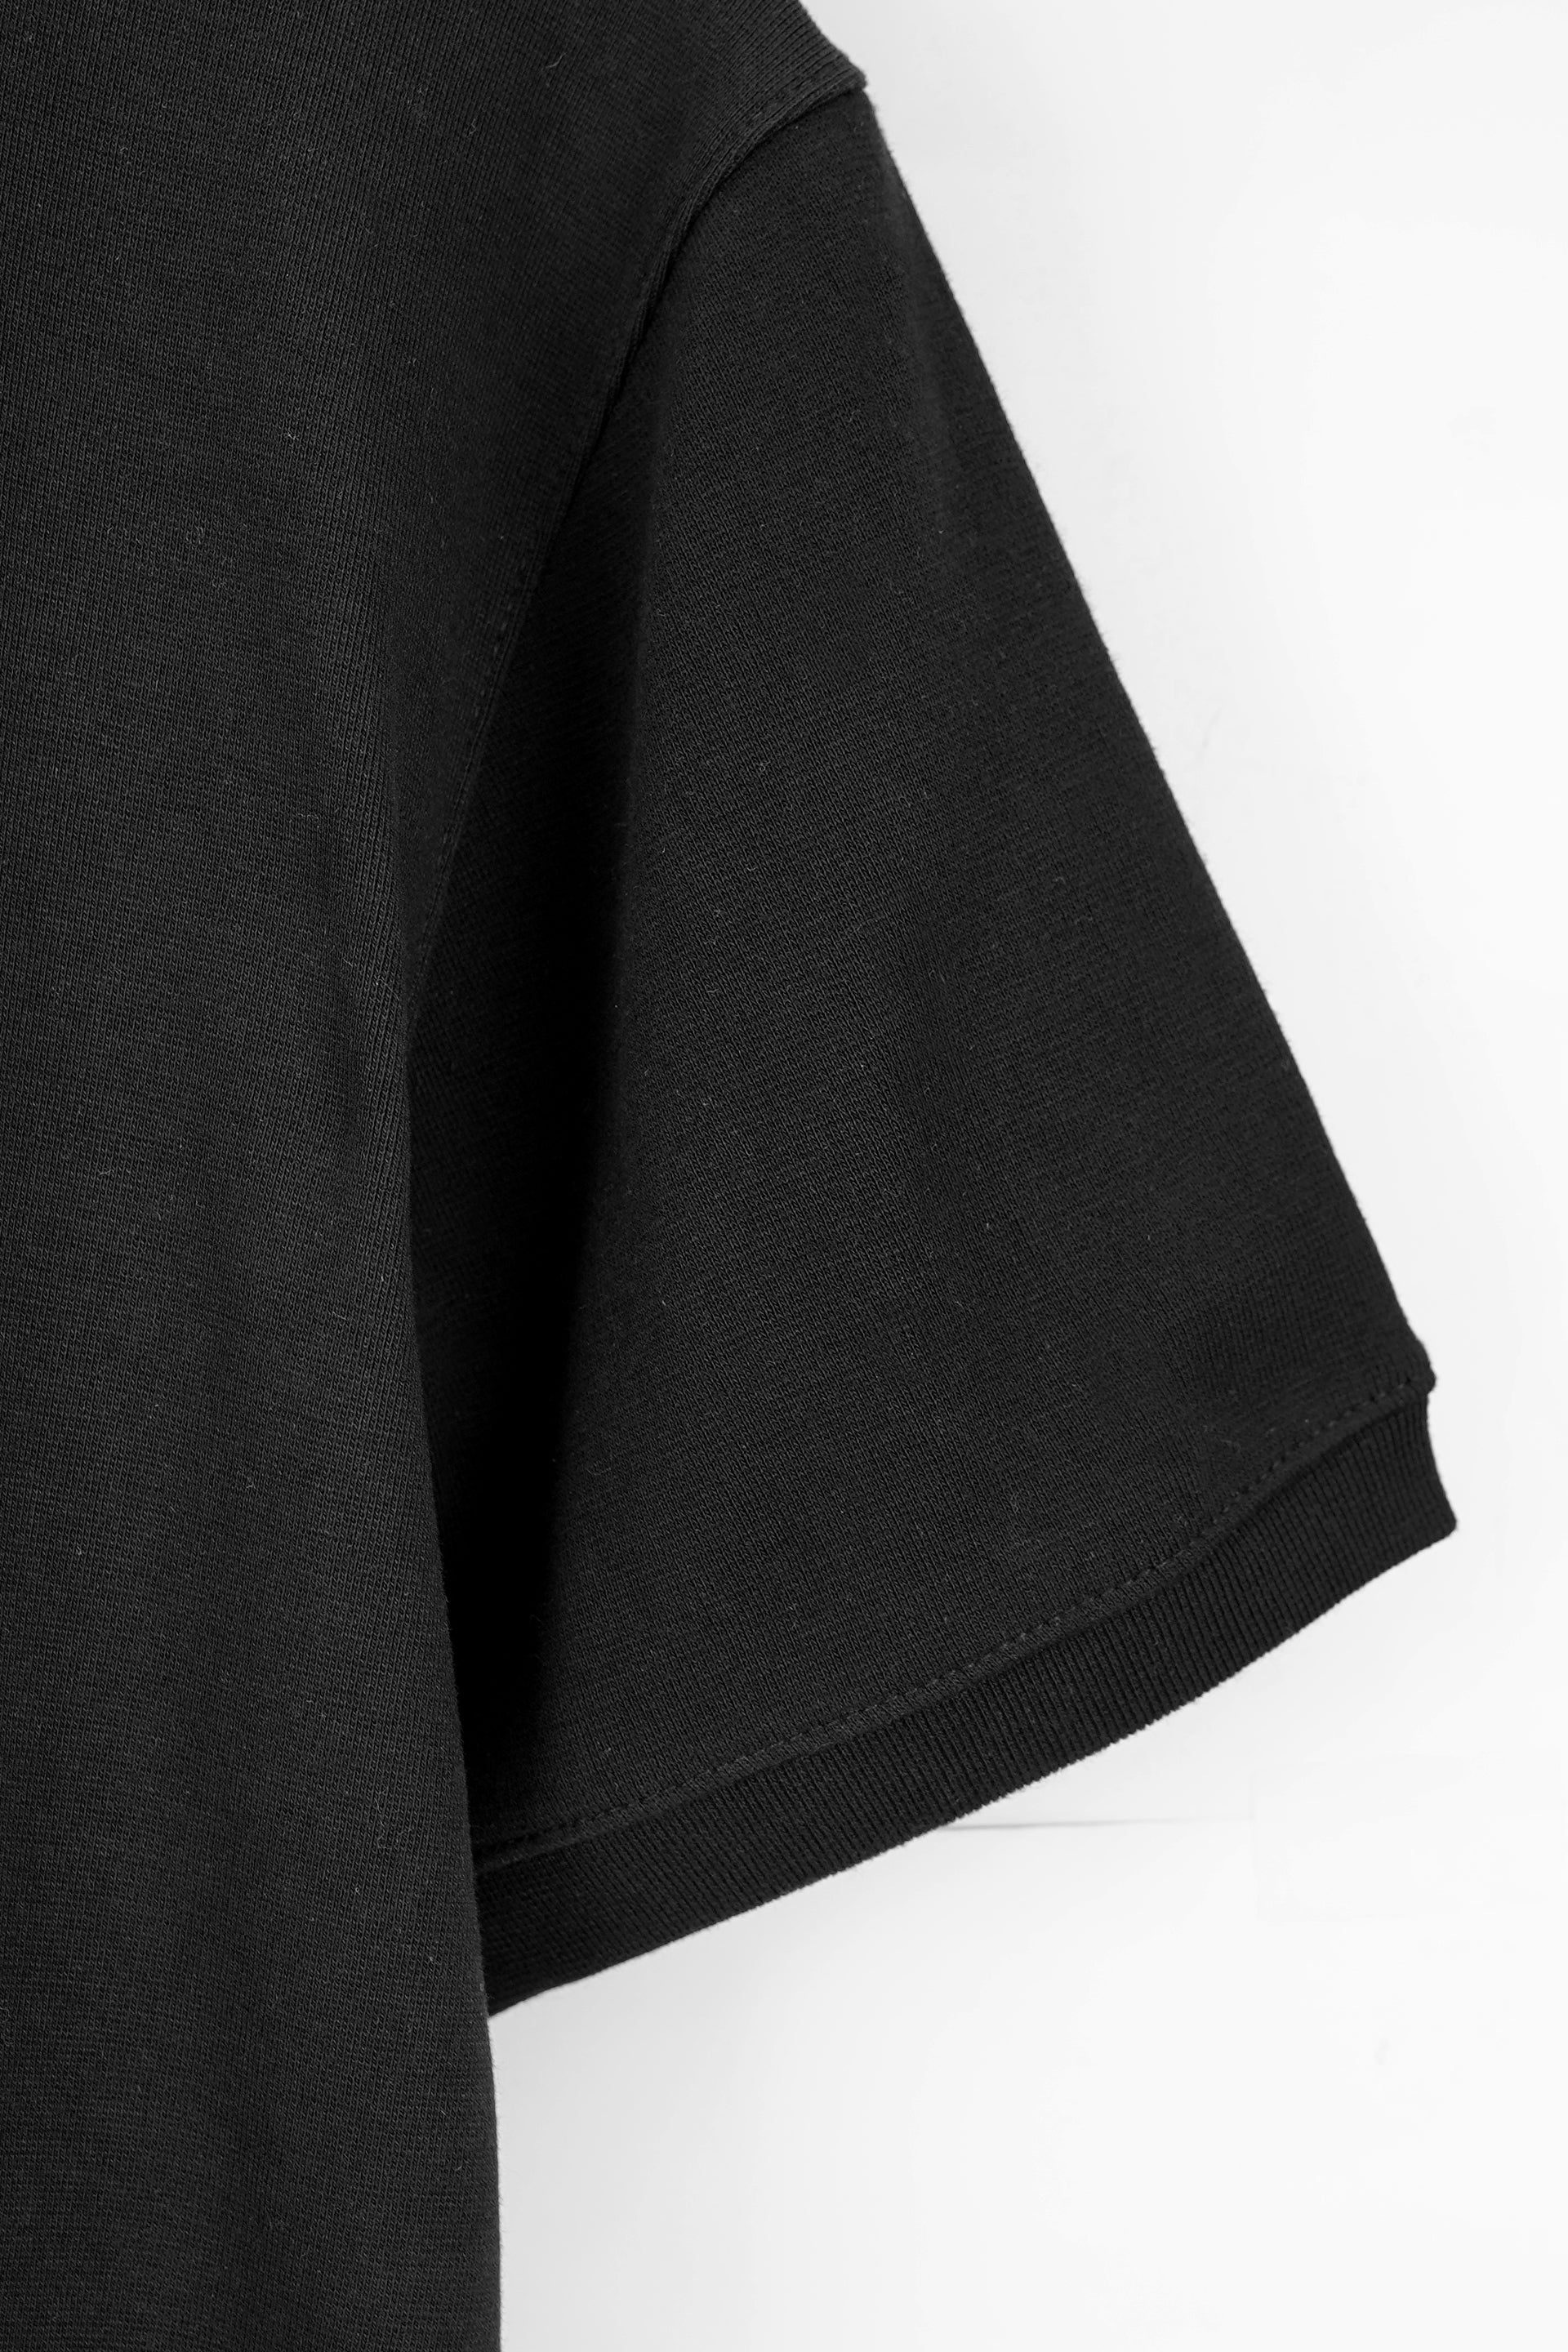 Black Rib Printed Zip Polo Shirt 002369